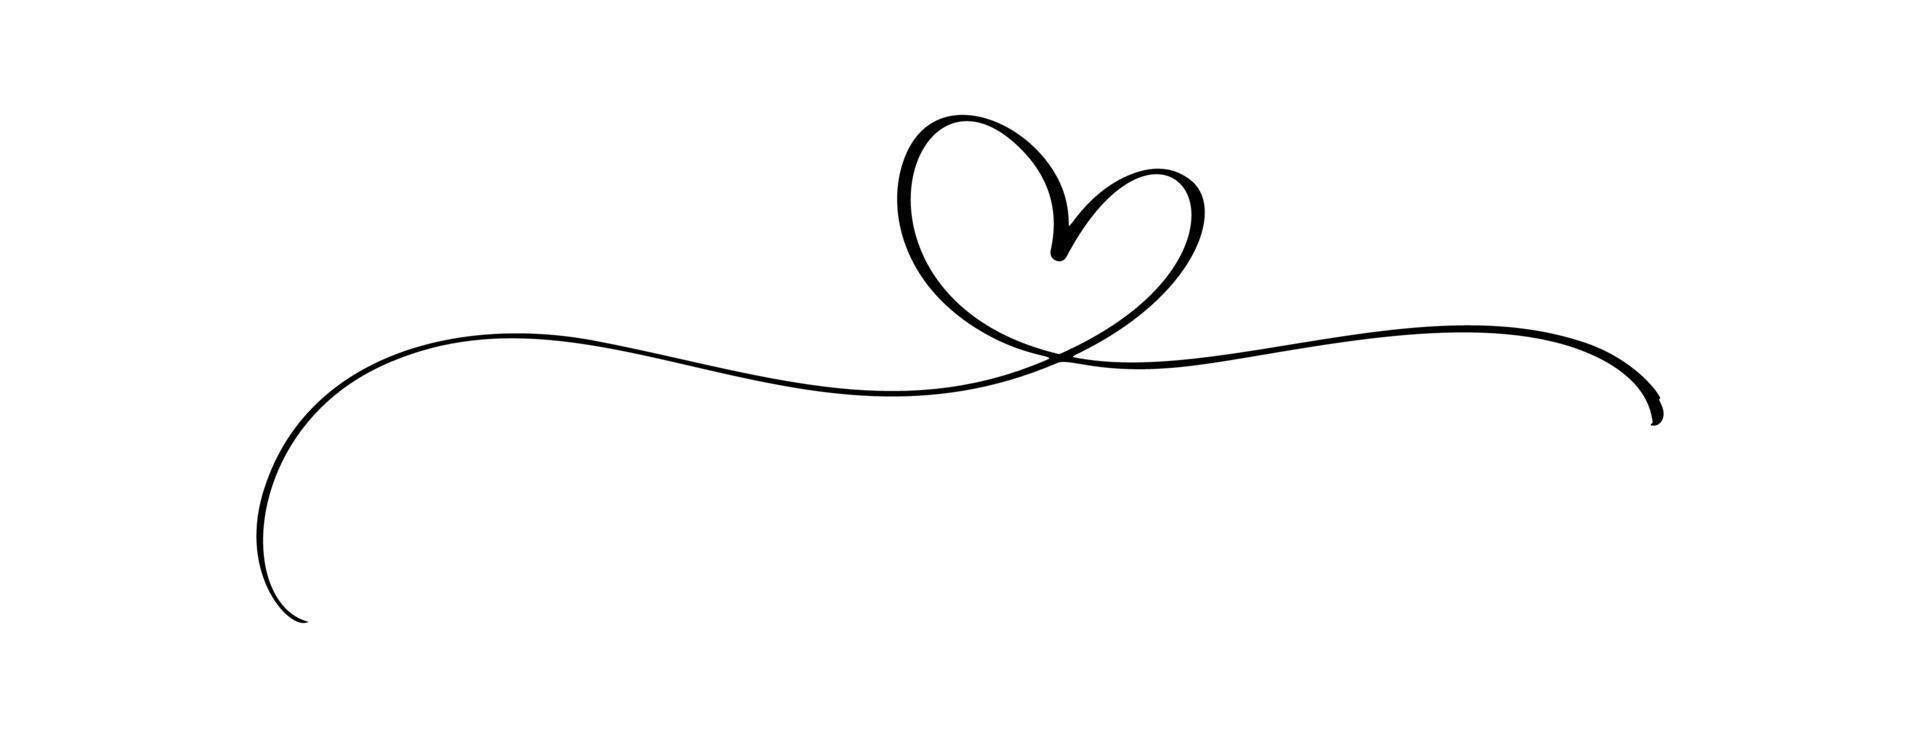 florecer vintage vector divisor día de san valentín corazón caligráfico dibujado a mano. ilustración de amor de caligrafía. elemento de diseño de vacaciones de san valentín. decoración de iconos para web, boda e impresión